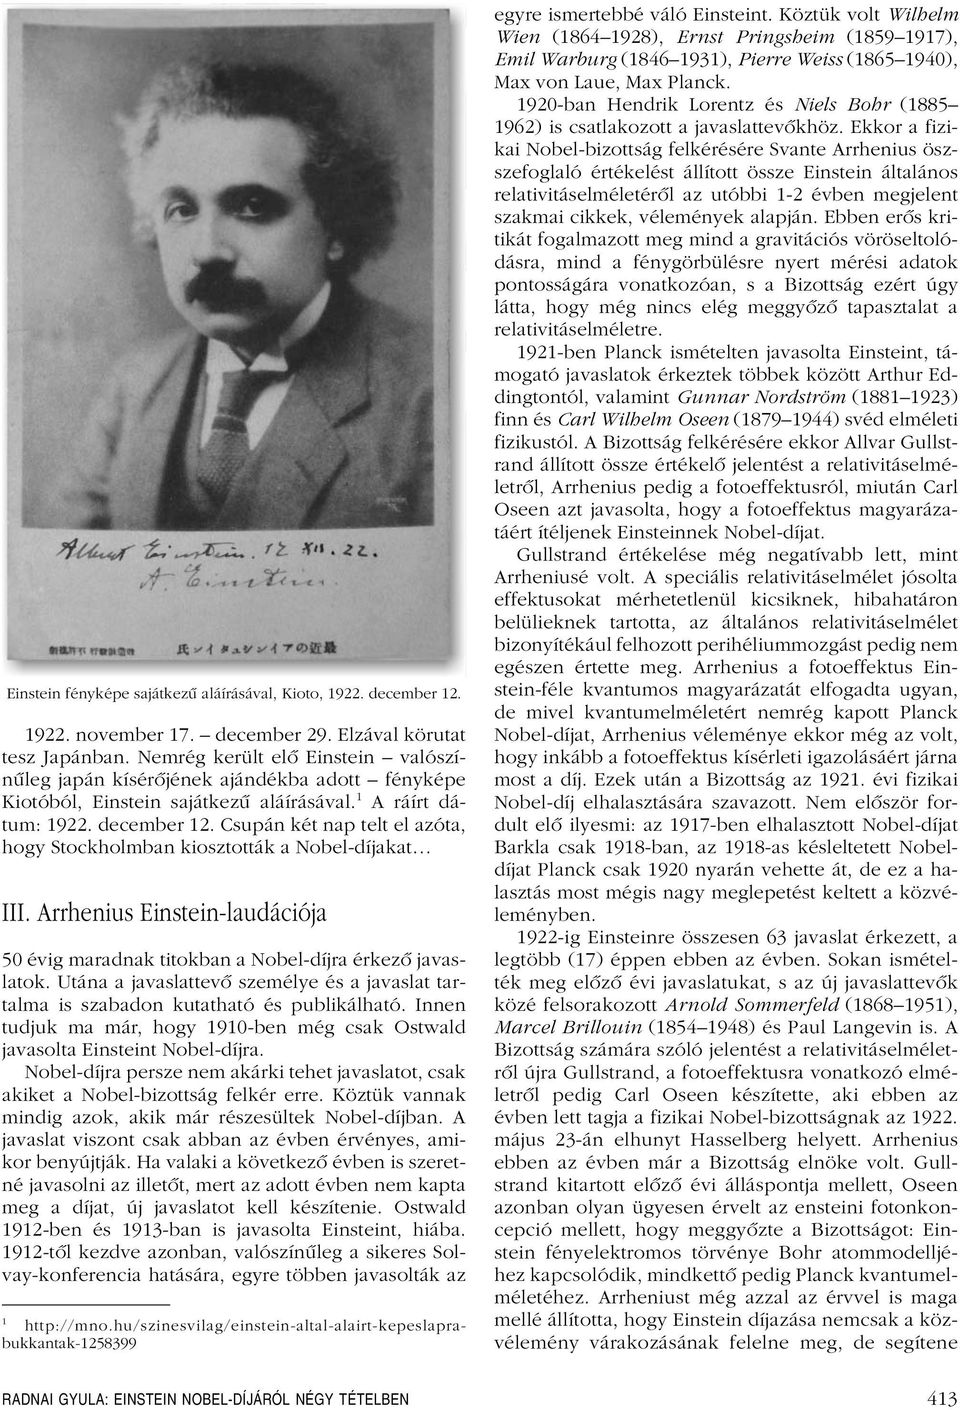 Csupán két nap telt el azóta, hogy Stockholmban kiosztották a Nobel-díjakat III. Arrhenius Einstein-laudációja 50 évig maradnak titokban a Nobel-díjra érkezô javaslatok.